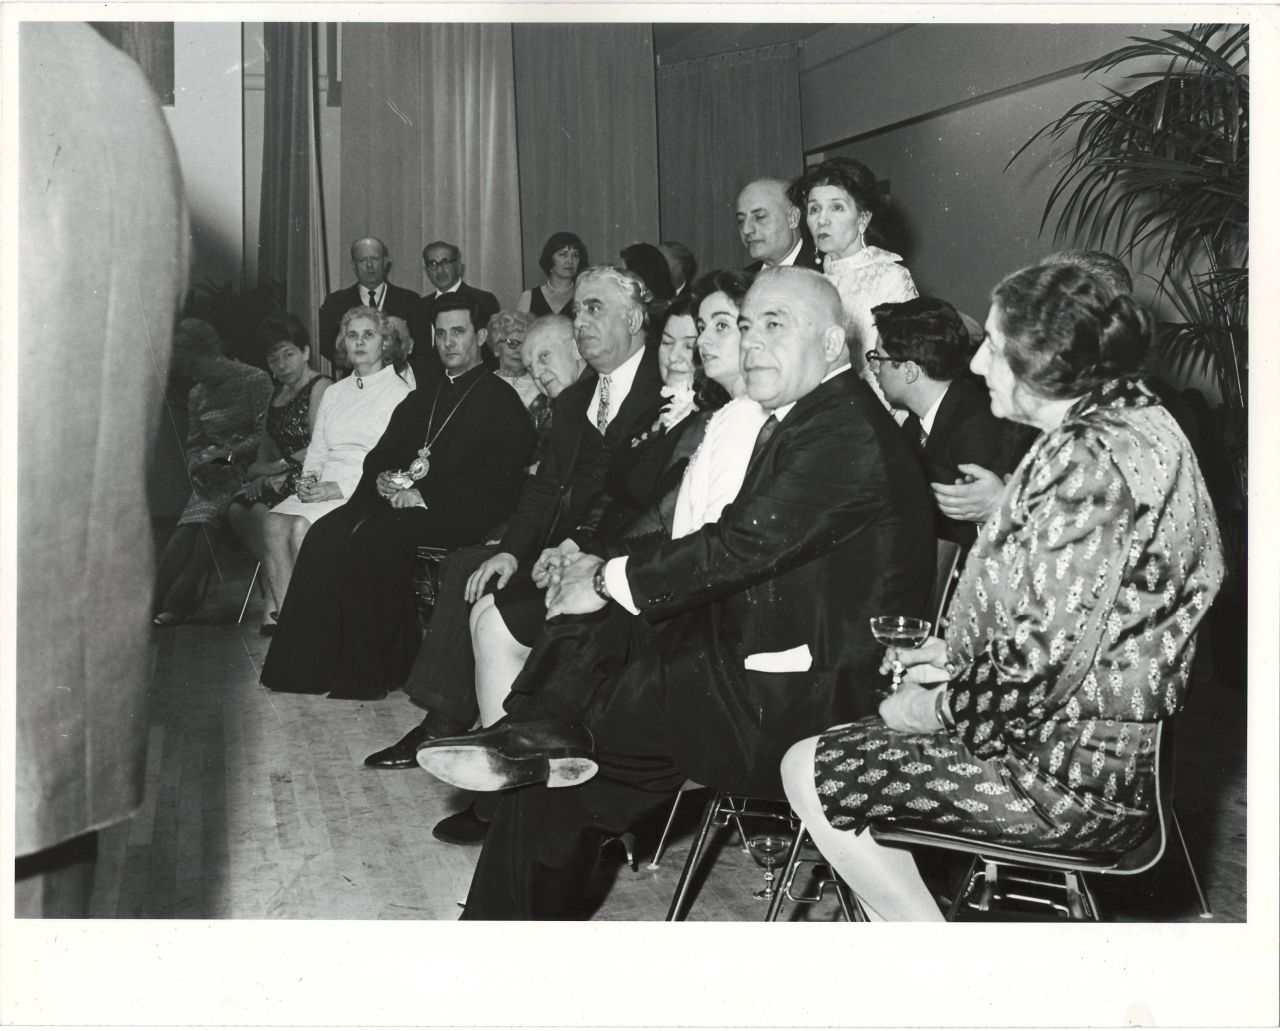 Լուսանկար. Ա. Խաչատրյանը  կնոջ՝ Ն. Մակարովայի, որդու՝ Կարենի, ամերիկացի դիրիժոր Լ. Ստոկովսկու և ԱՄՆ-ի հայ համայքնի ներկայացուցիչների հետ իր պատվին կազմակերպված երեկոյի ժամանակ 